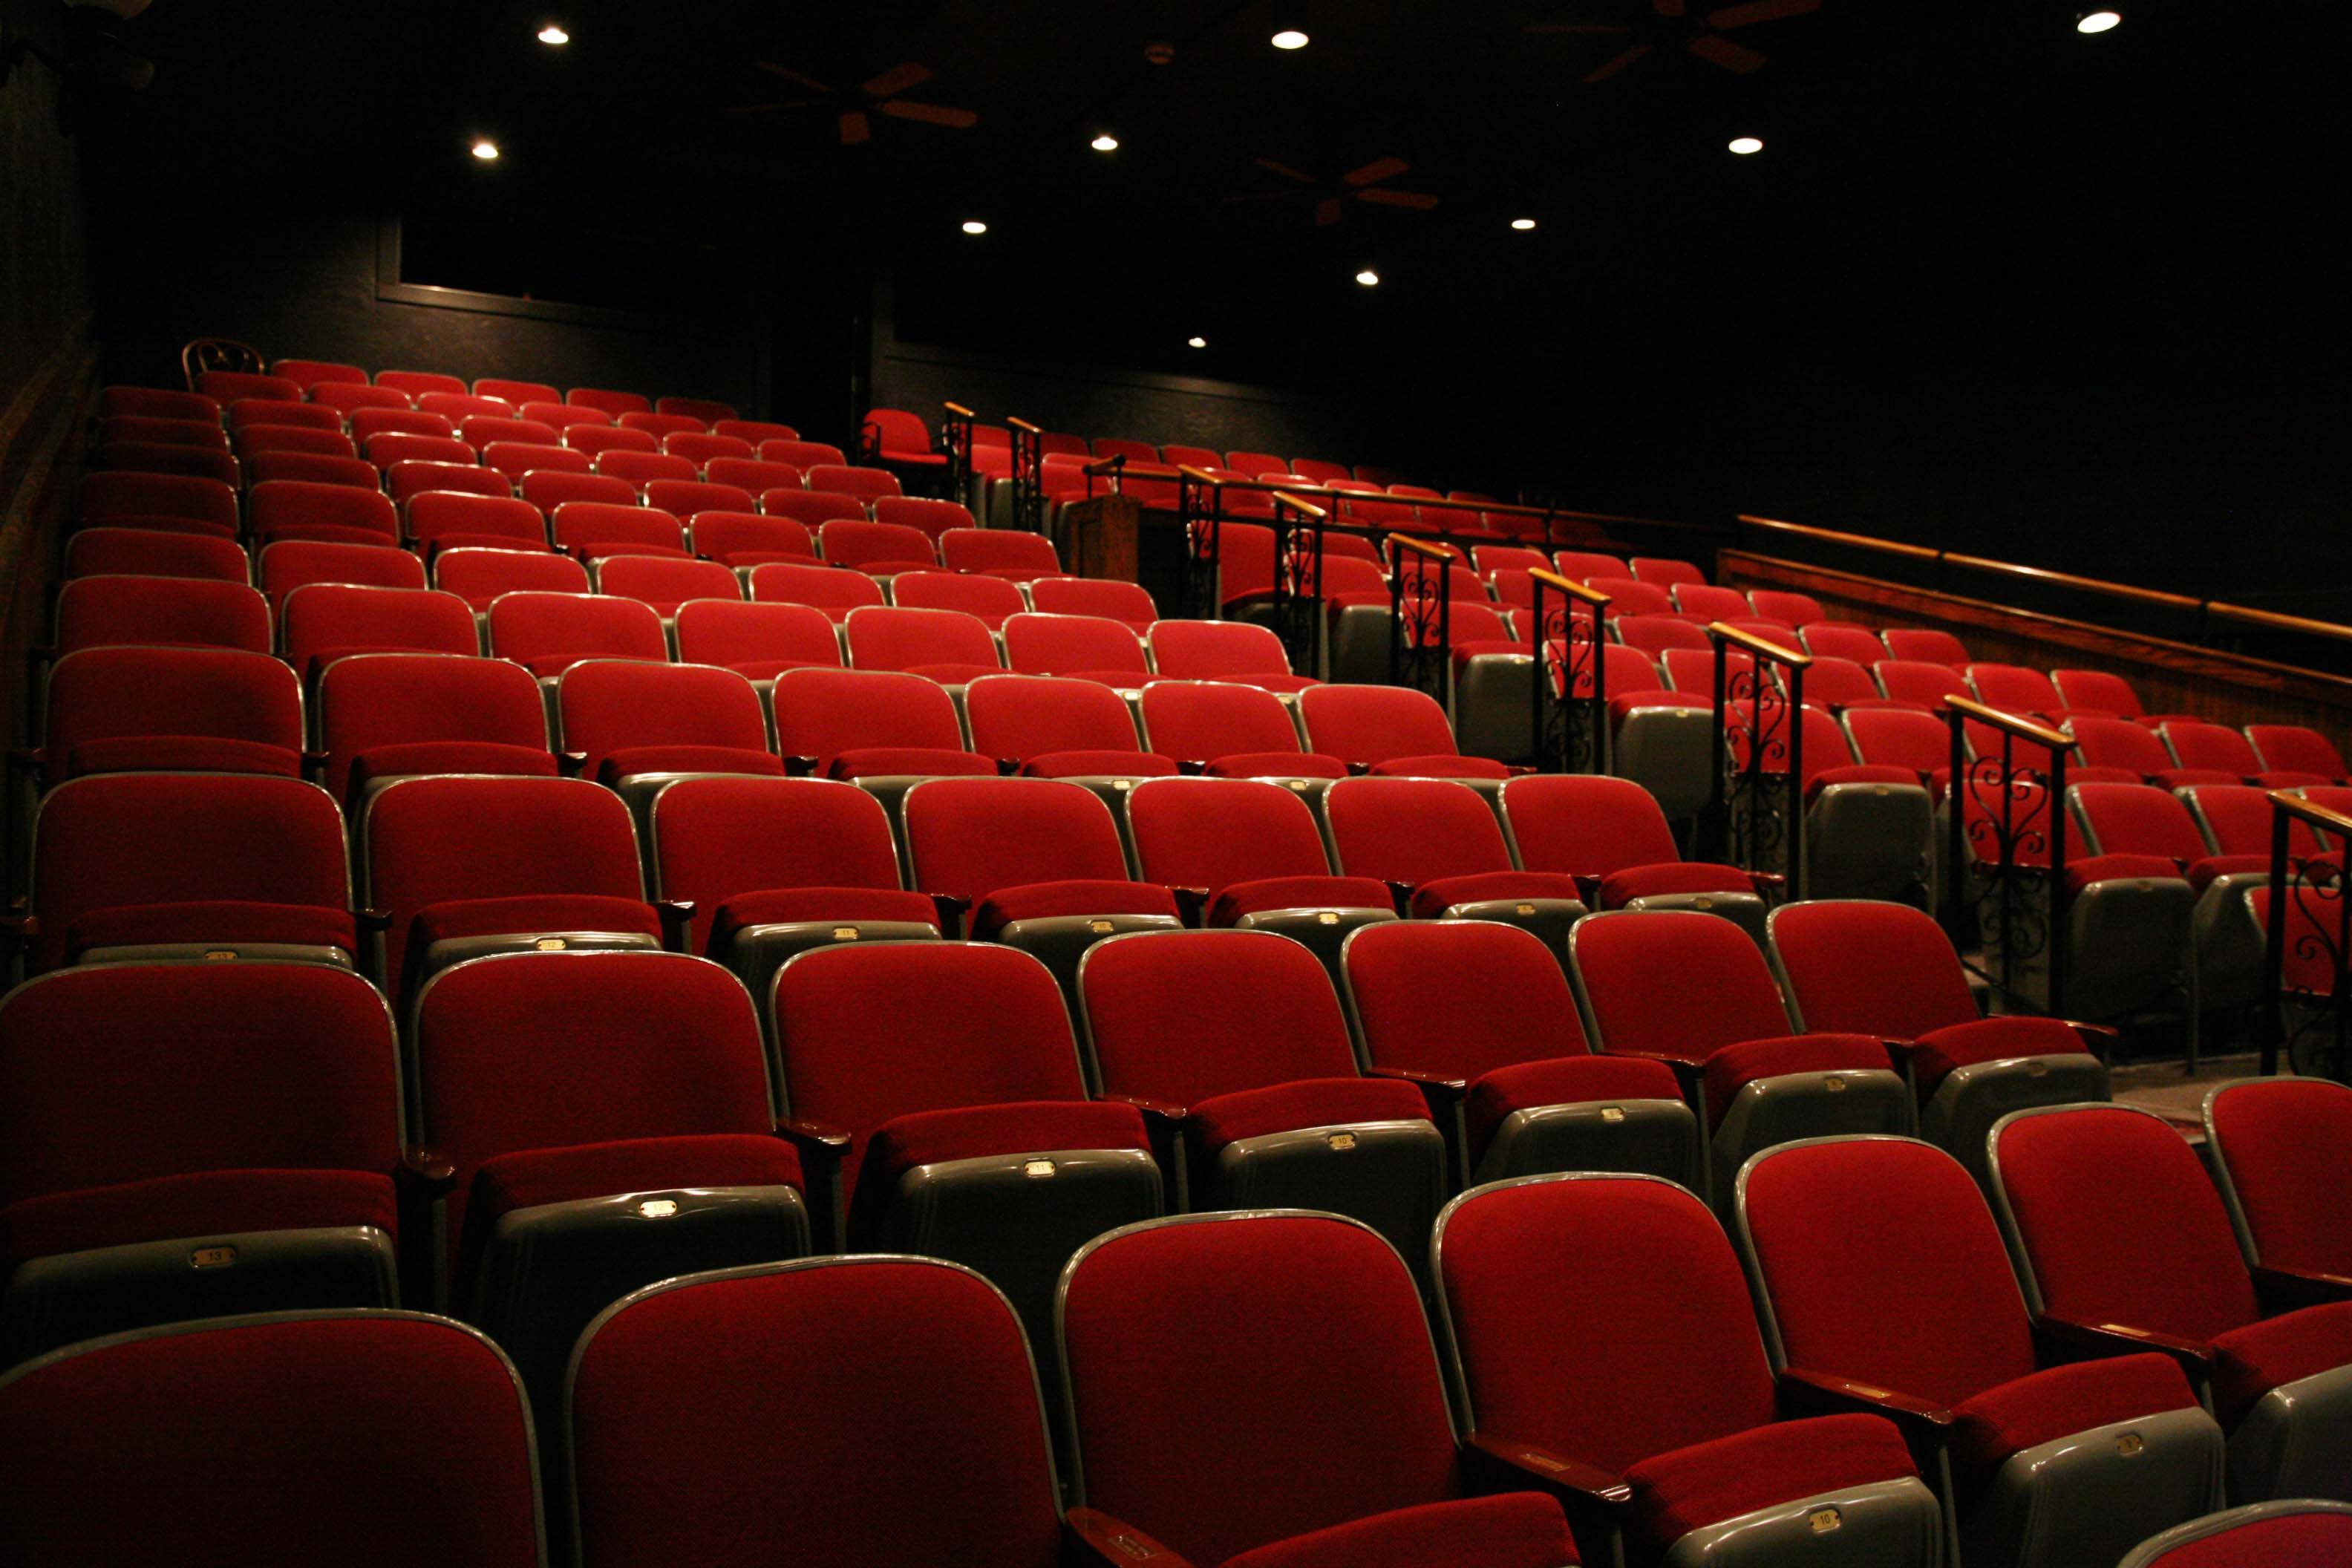 Theatre seating. Кинотеатр. Пустой кинотеатр. Зал кинотеатра. Театр кинотеатр.